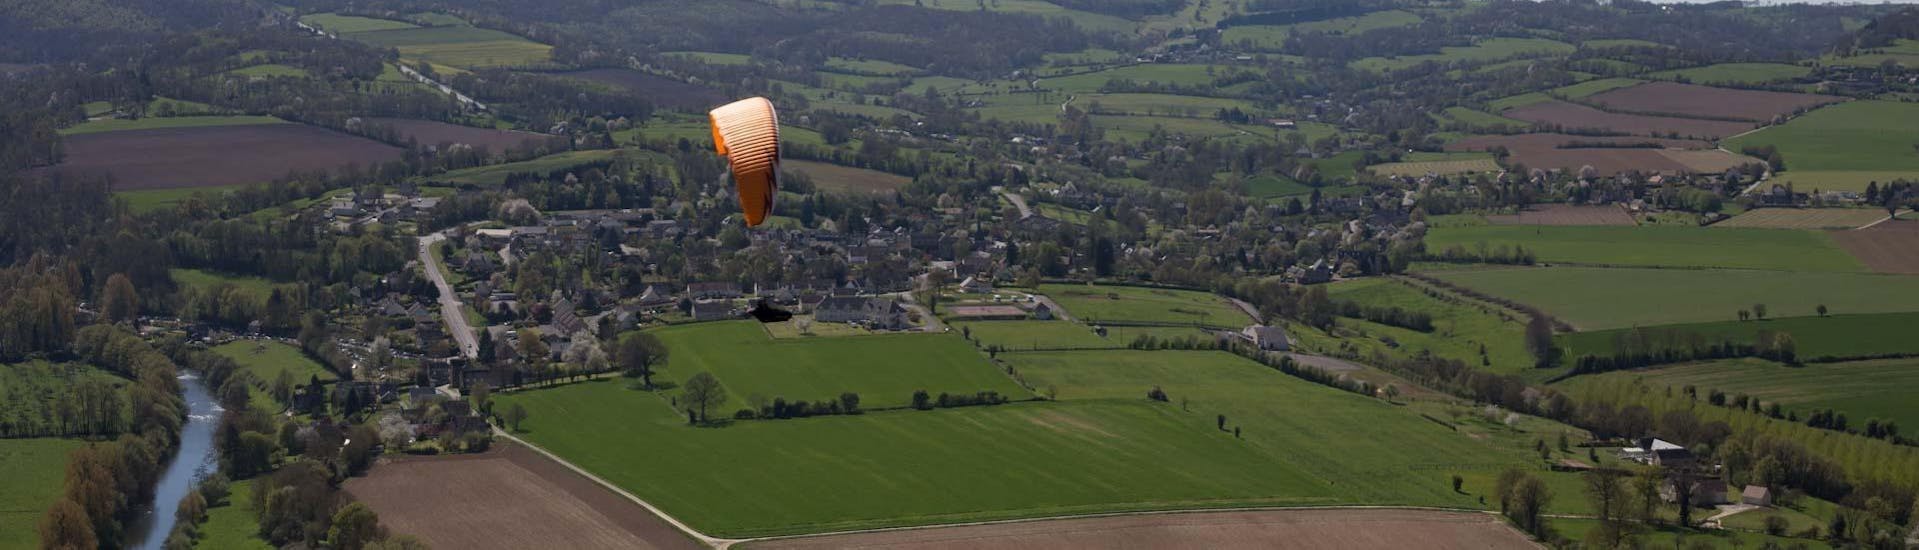 Lange afstand tandem paragliding in Carolles (vanaf 5 j.) - Le mont Saint-Michel.